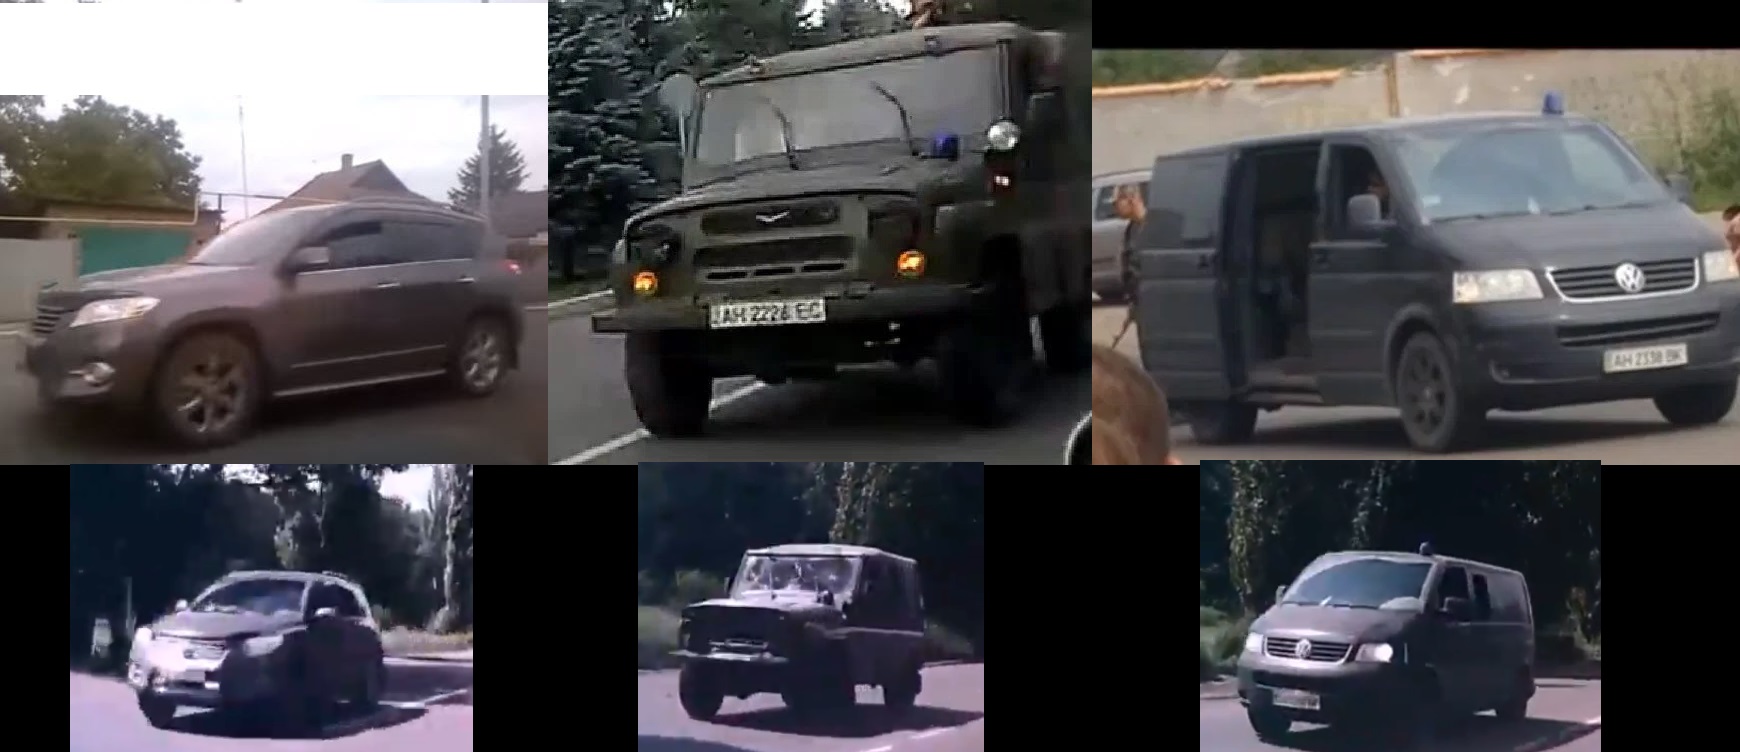 Сравнение машин с видео 15 июля (вверху) и 17 июля в Макеевке на востоке Украины (внизу).